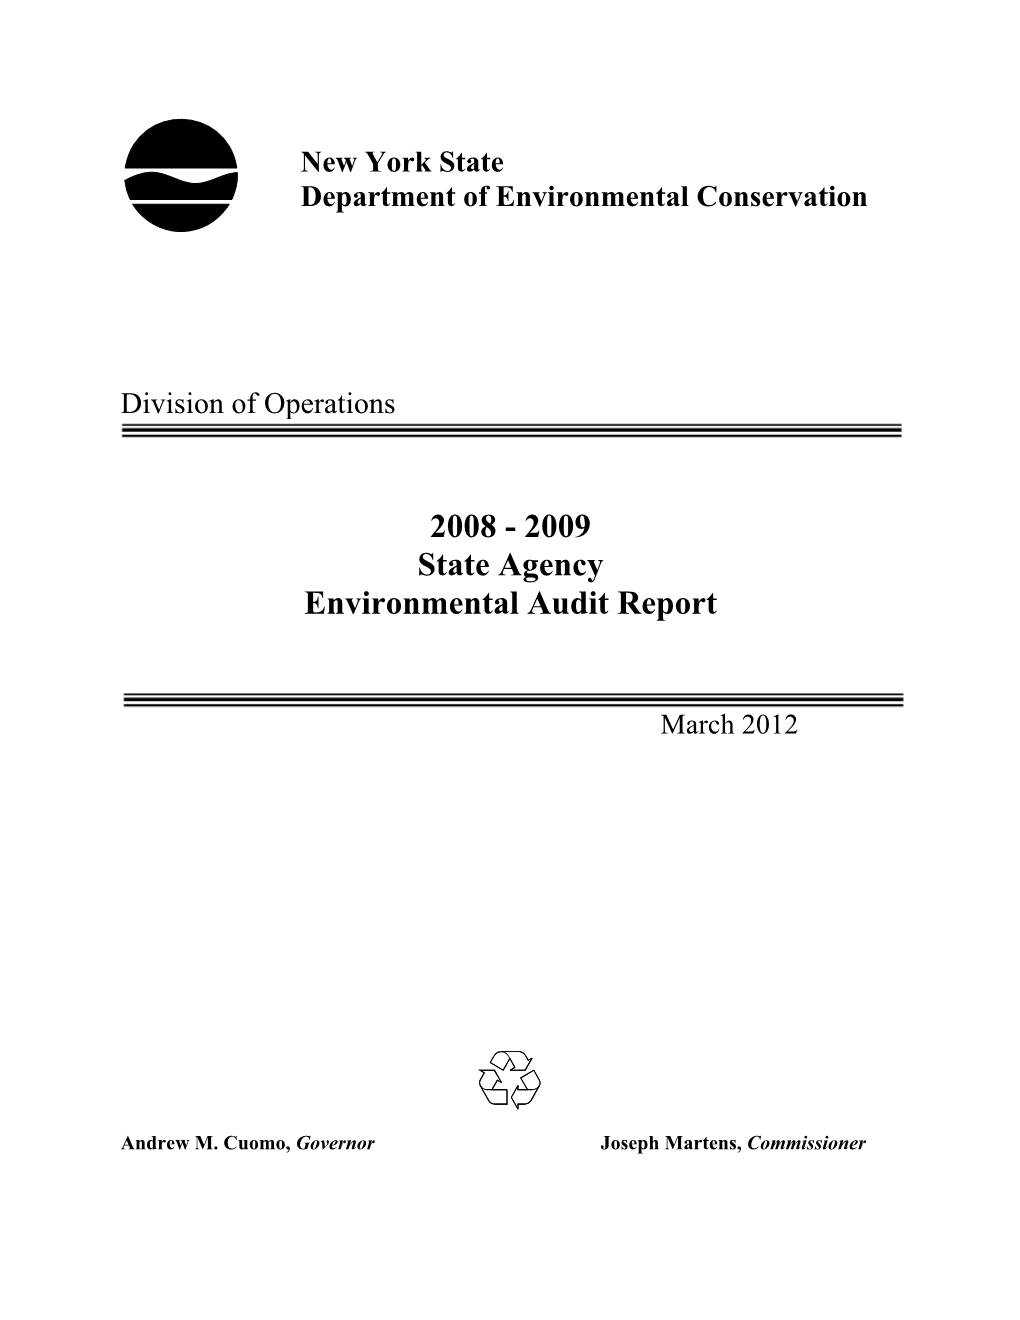 2008-09 Environmental Audit Report